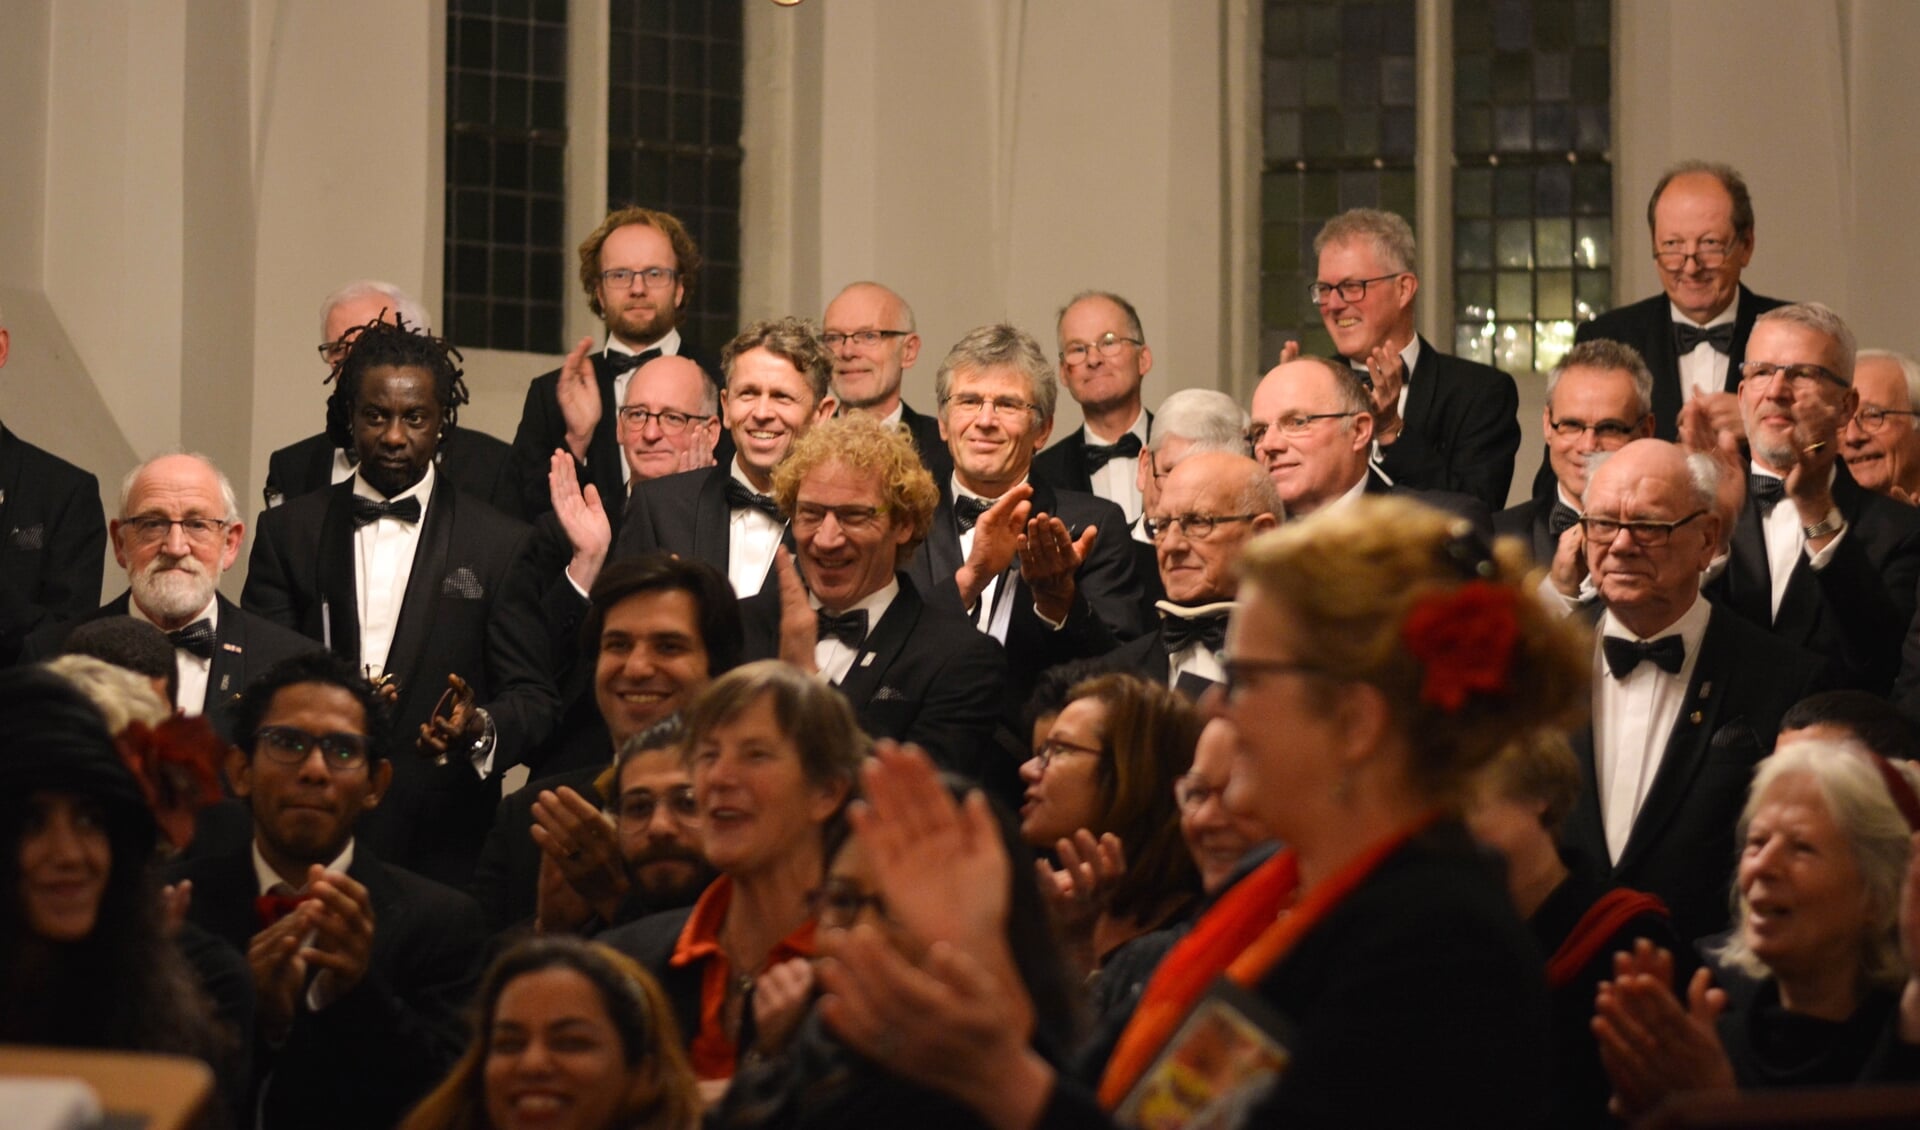 De twee koren applaudisseren voor elkaar aan het slot van hun optreden in de Martinuskerk. Foto: Caitlinrsphoto